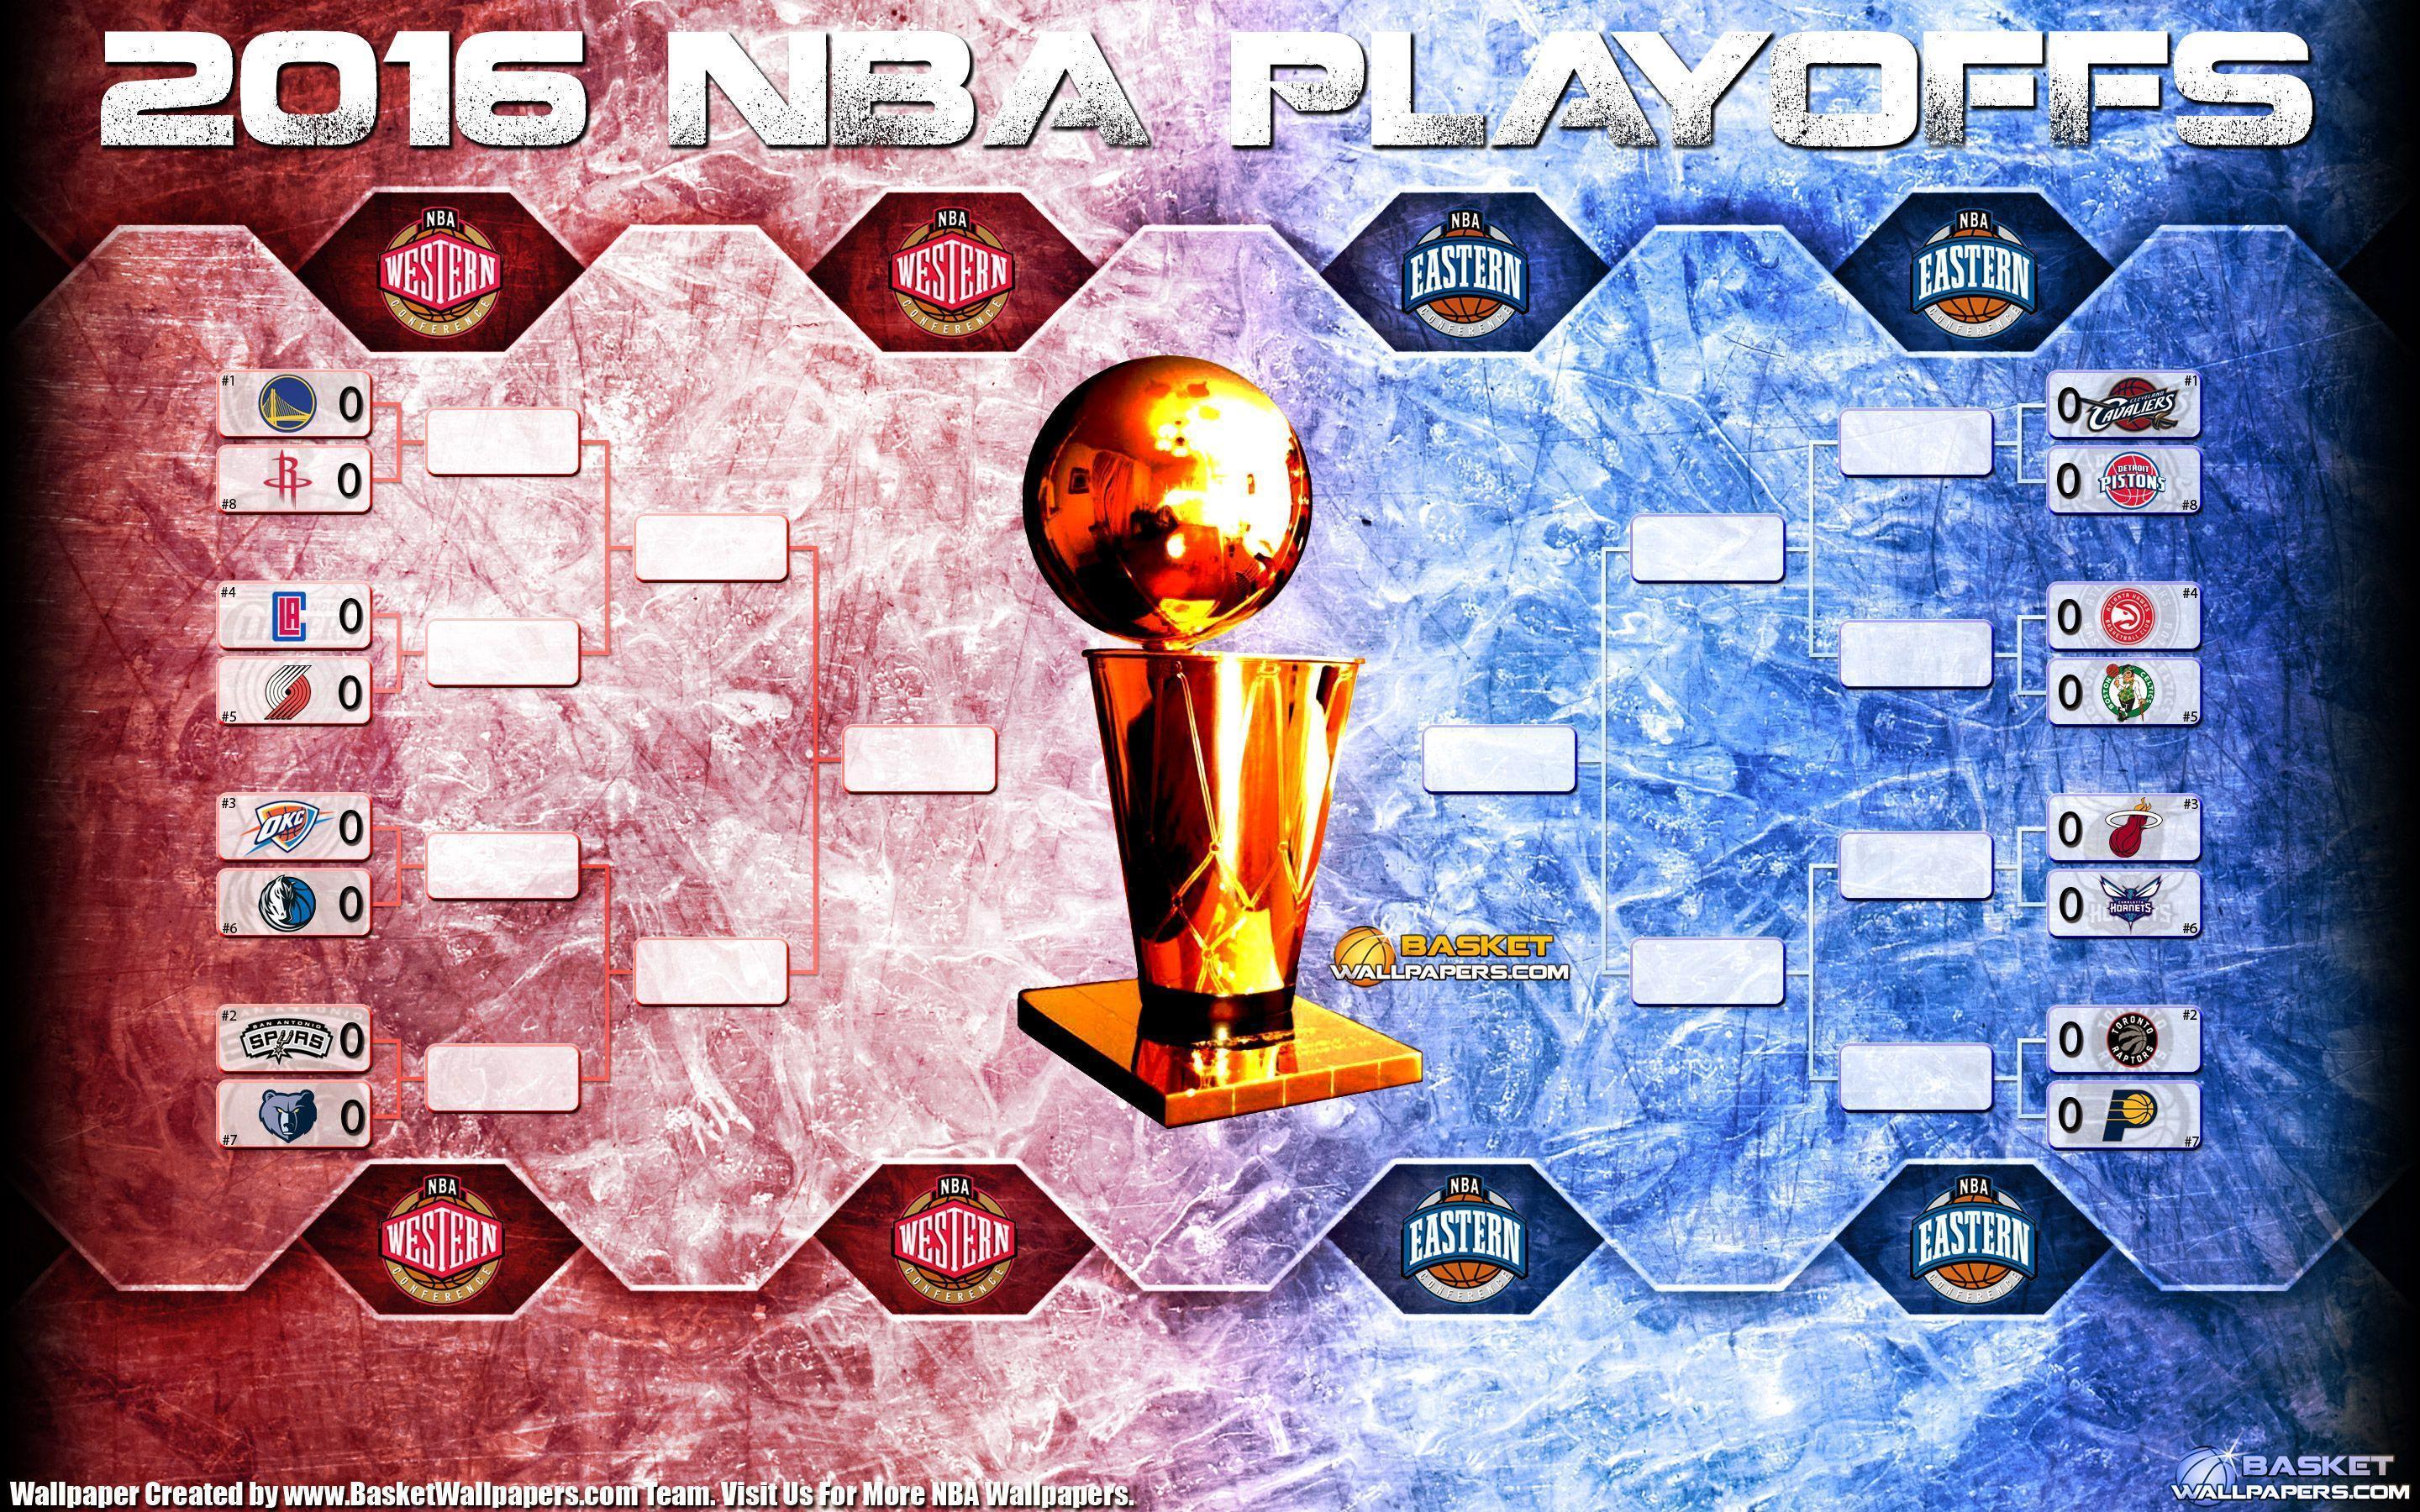 NBA Playoffs Bracket 2880×1800 Wallpaper. Basketball